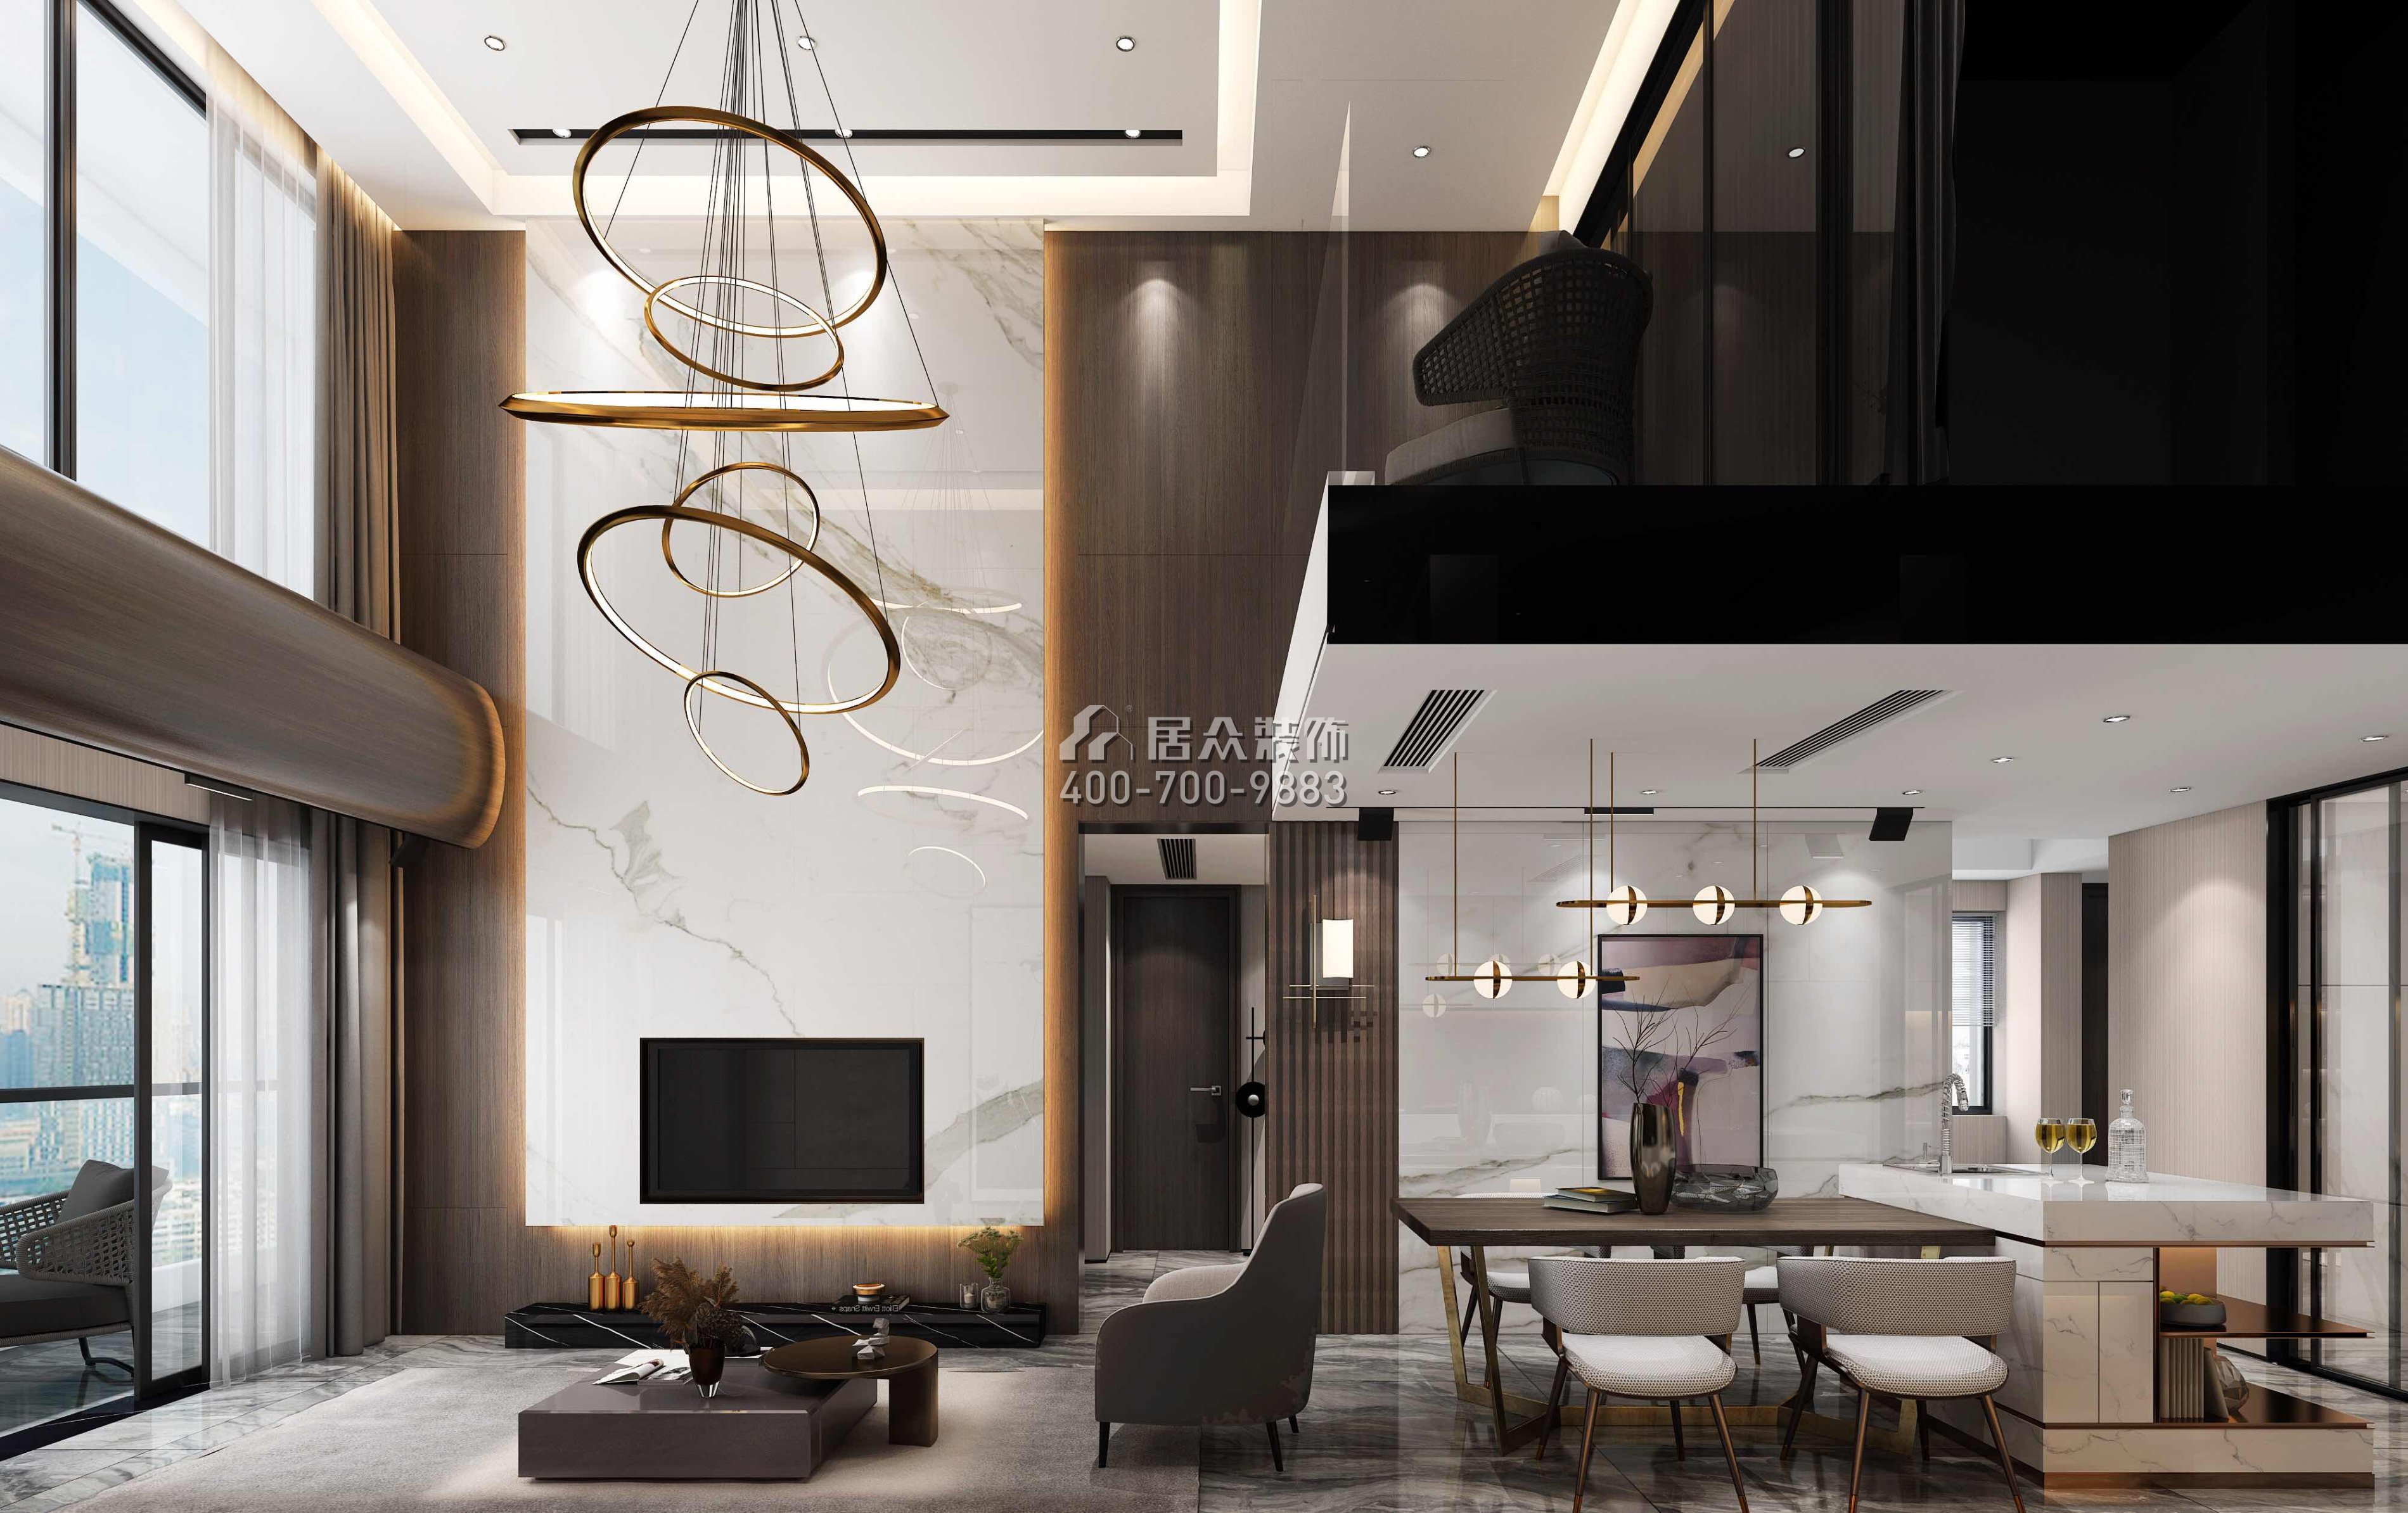 佳兆業城市廣場220平方米現代簡約風格復式戶型客餐廳一體裝修效果圖